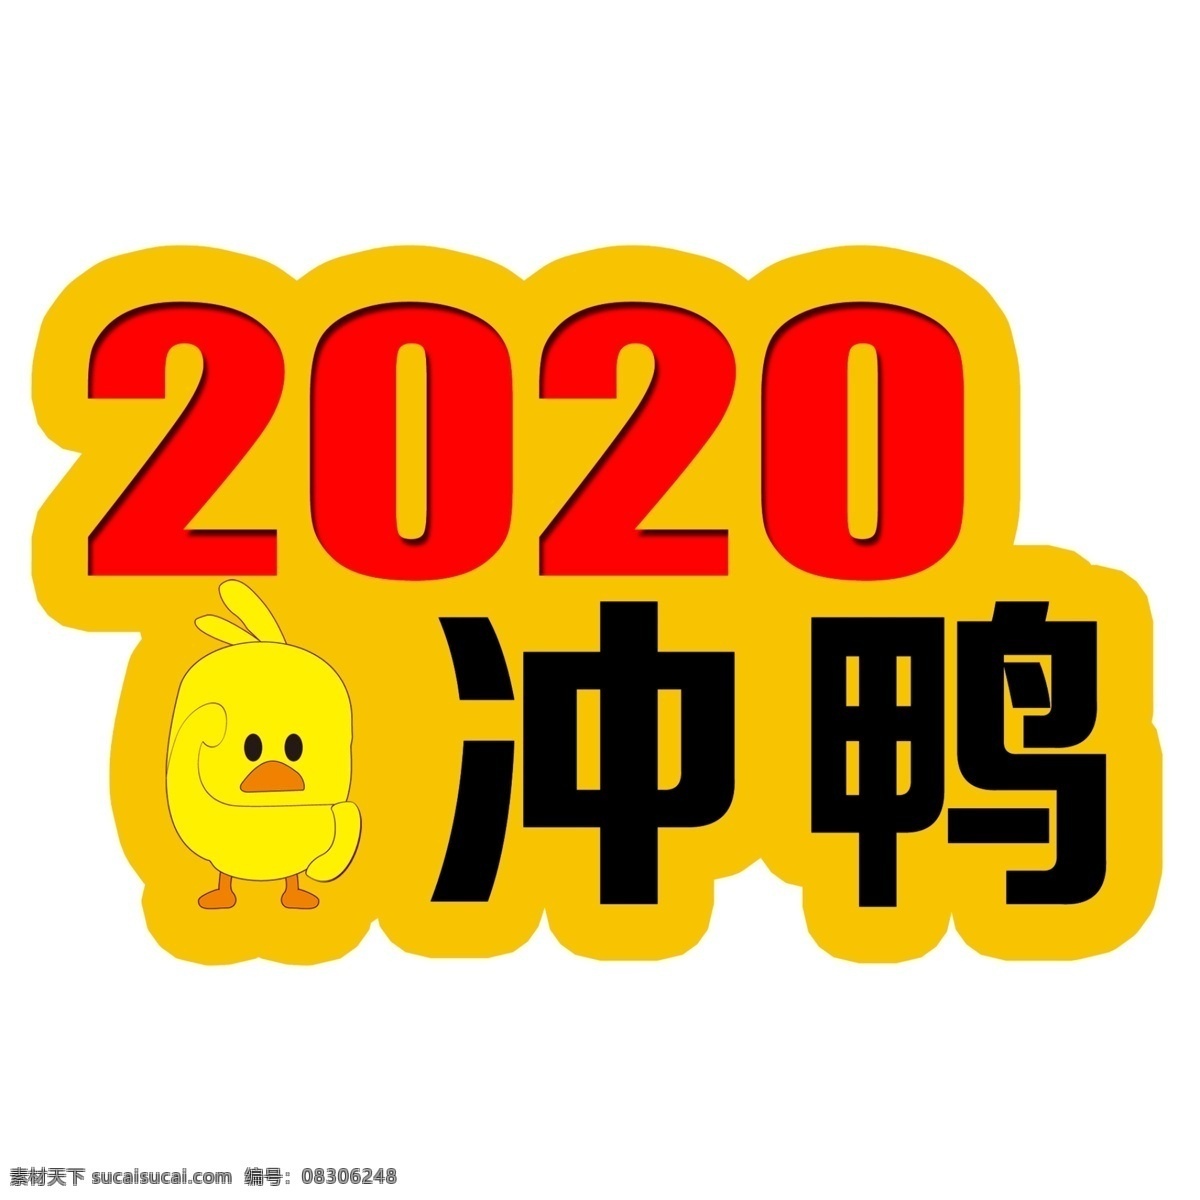 2020冲鸭 鸭 小黄鸭 2020 冲鸭 举牌 异形牌 网红小黄鸭 室外广告设计